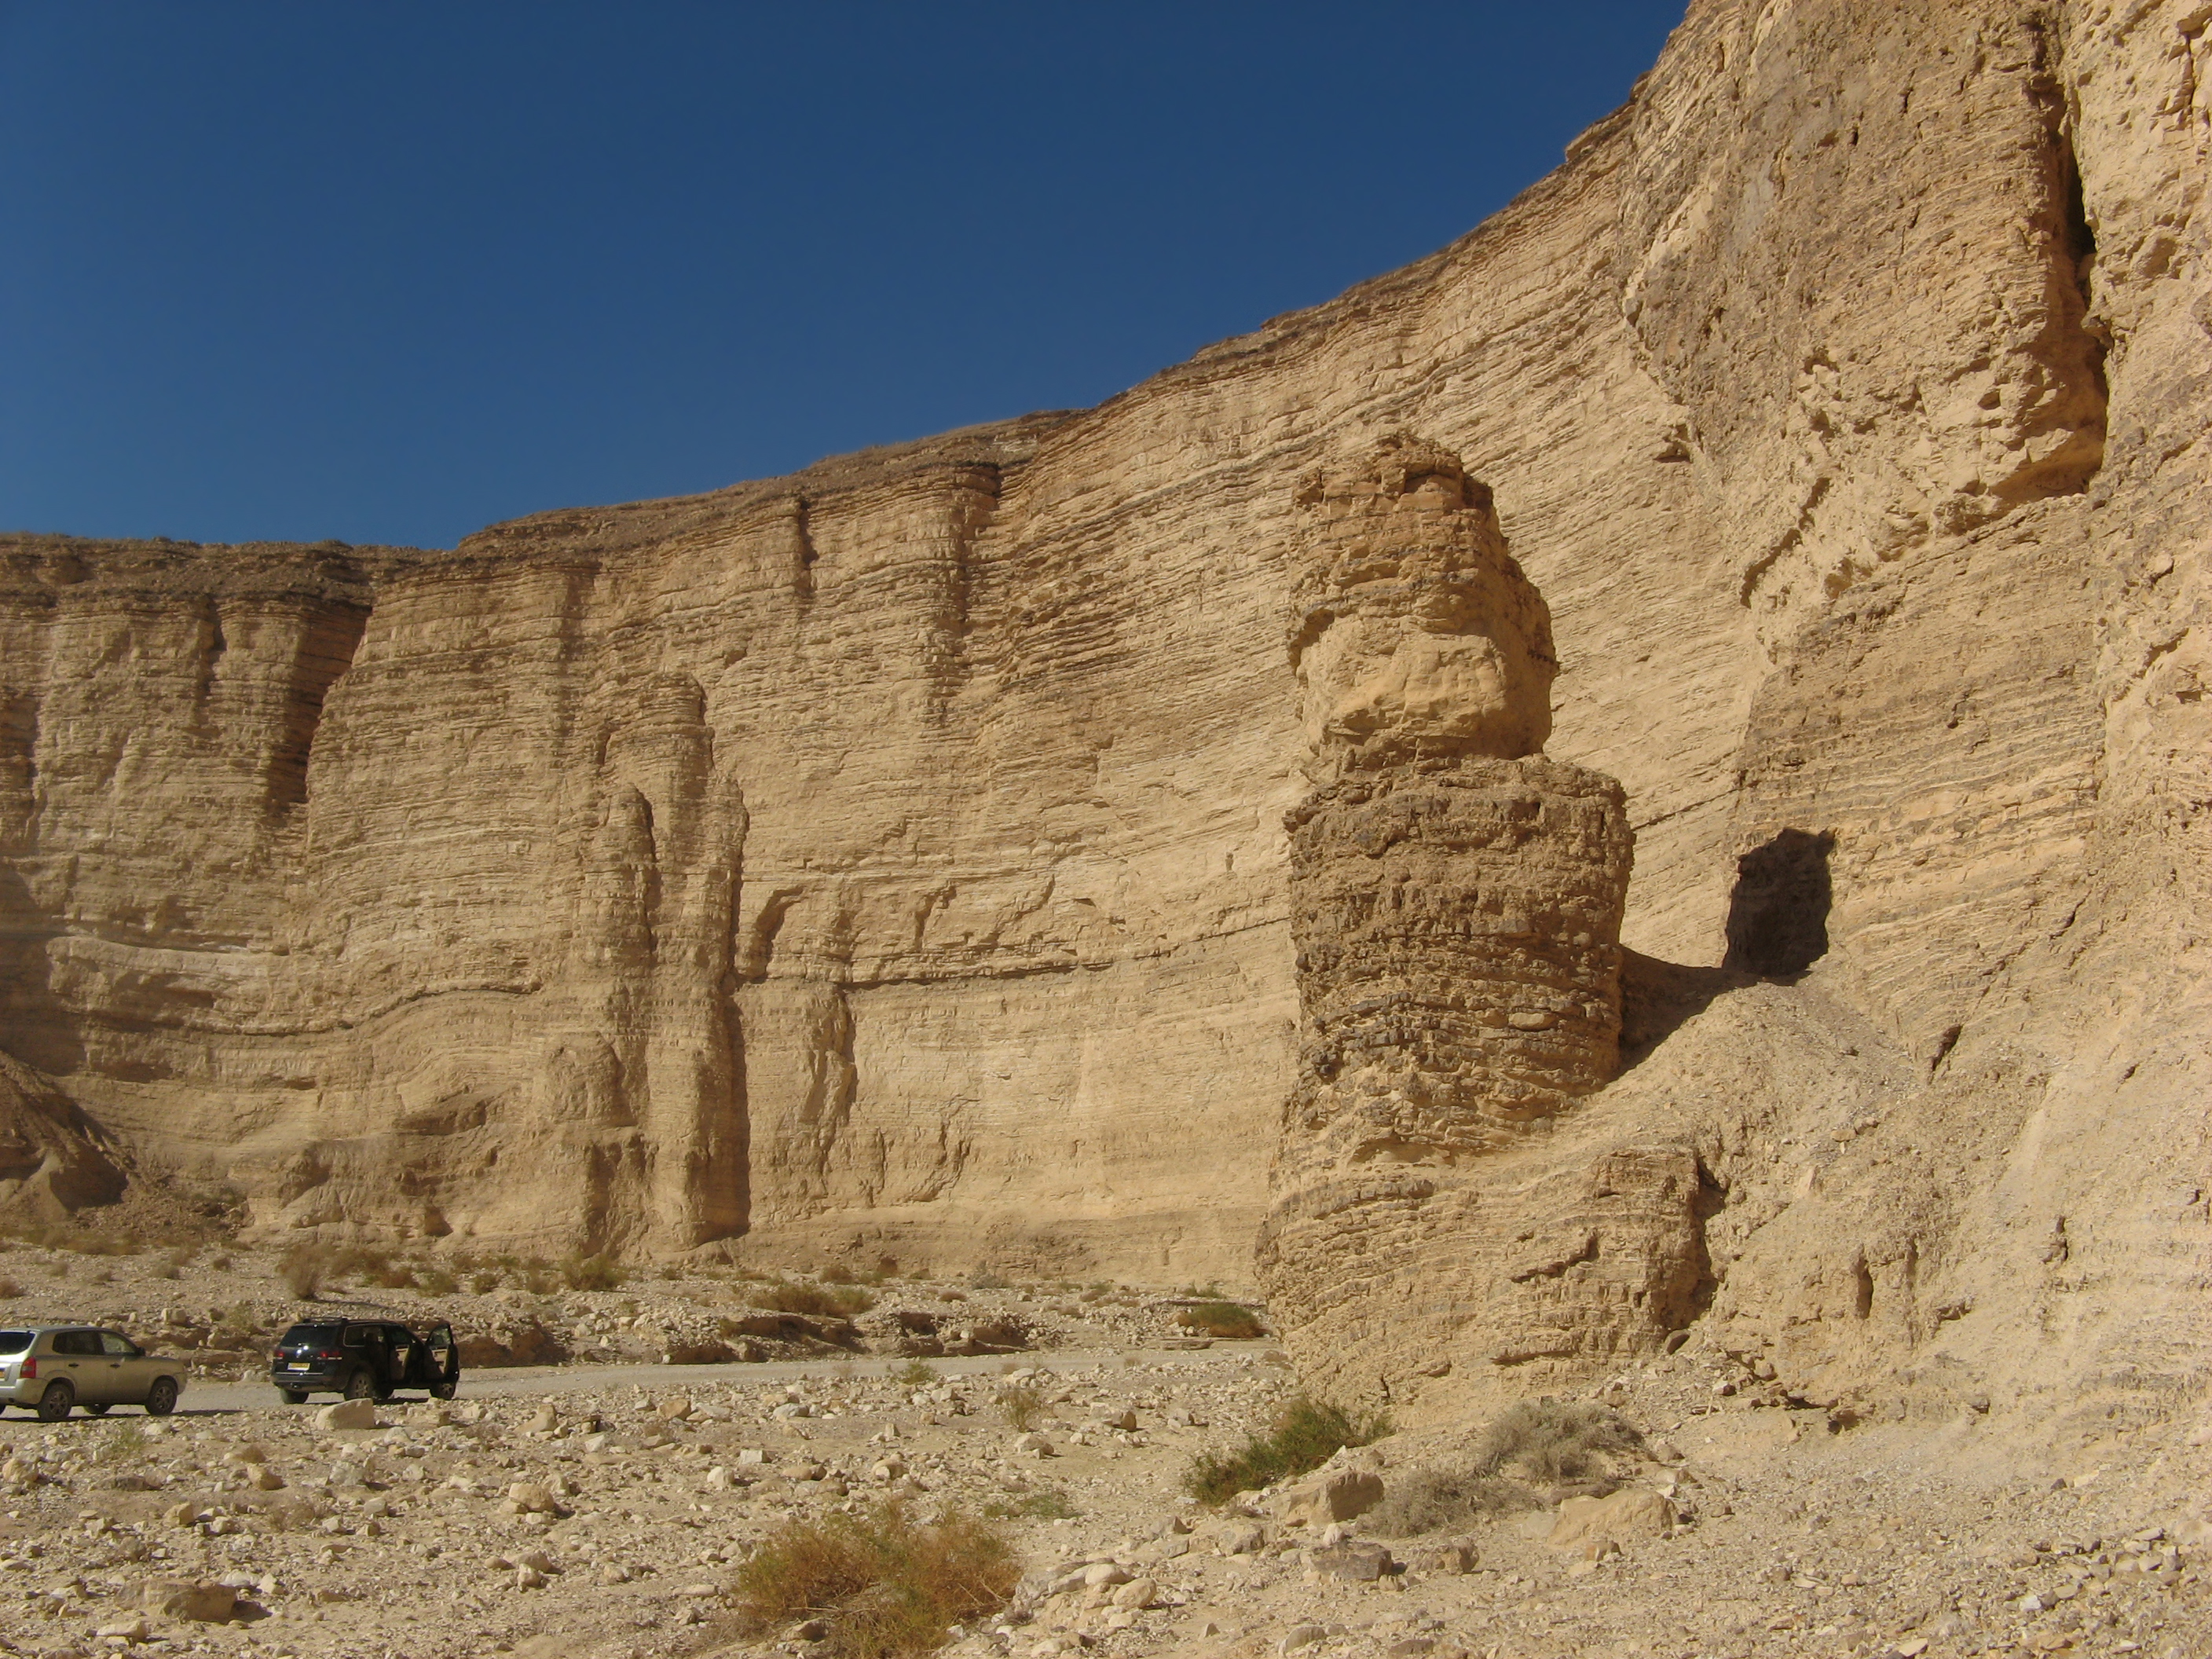 Cliffs in judea desert, israel